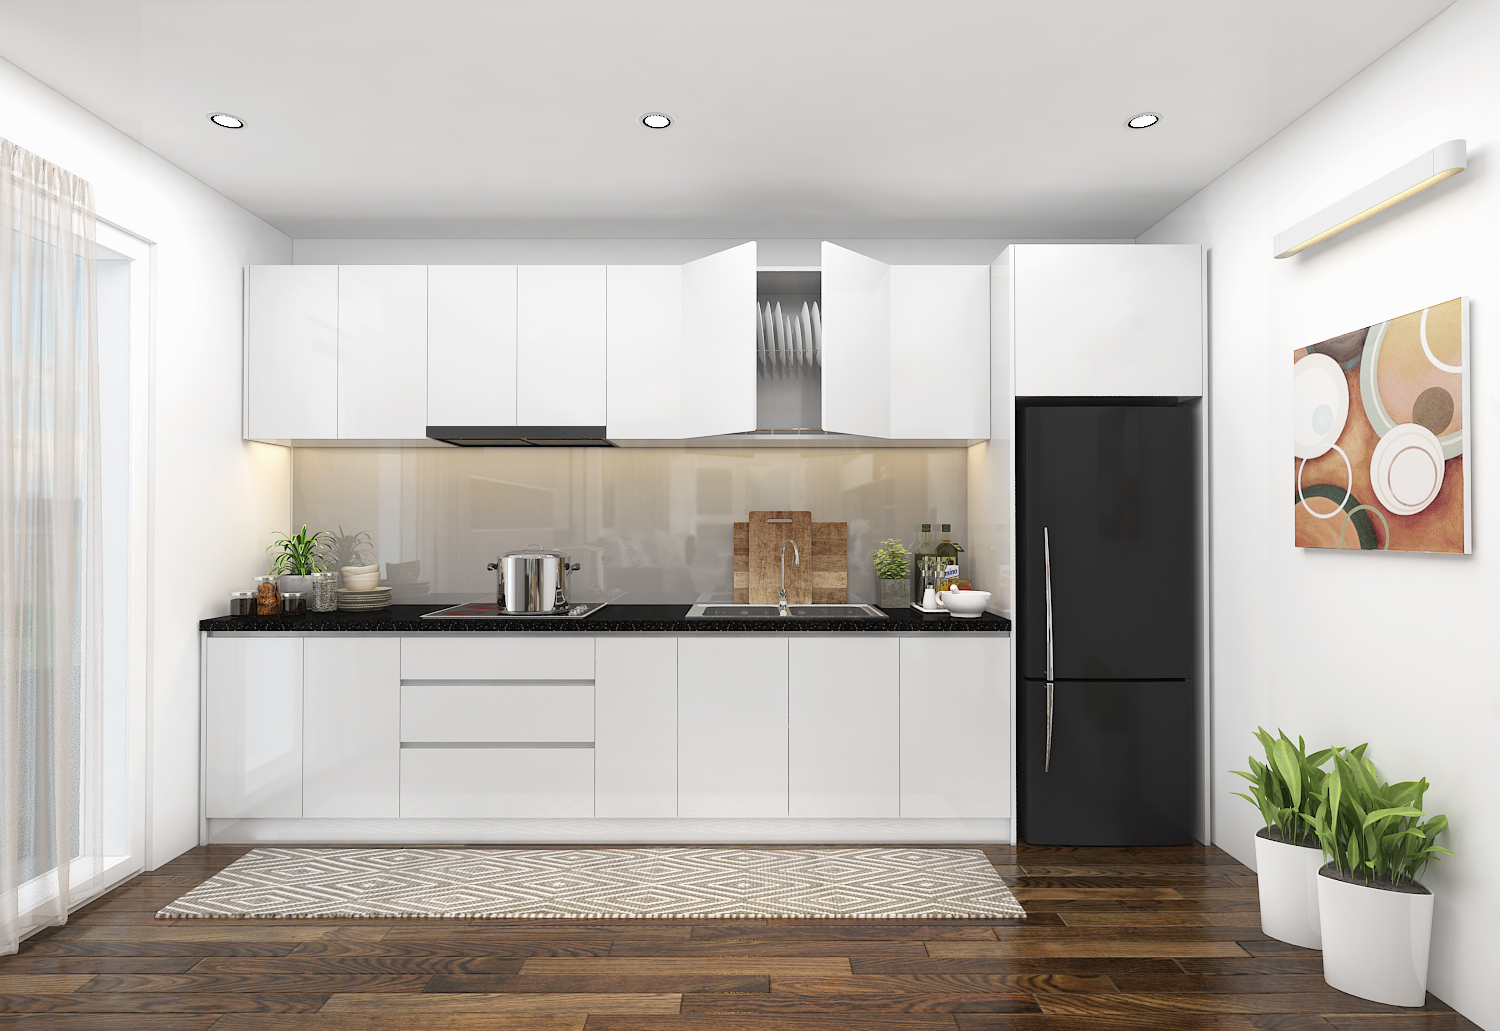 6 cách bài trí nội thất chuẩn chỉnh cho phòng bếp dưới 8m² - Ảnh 1.